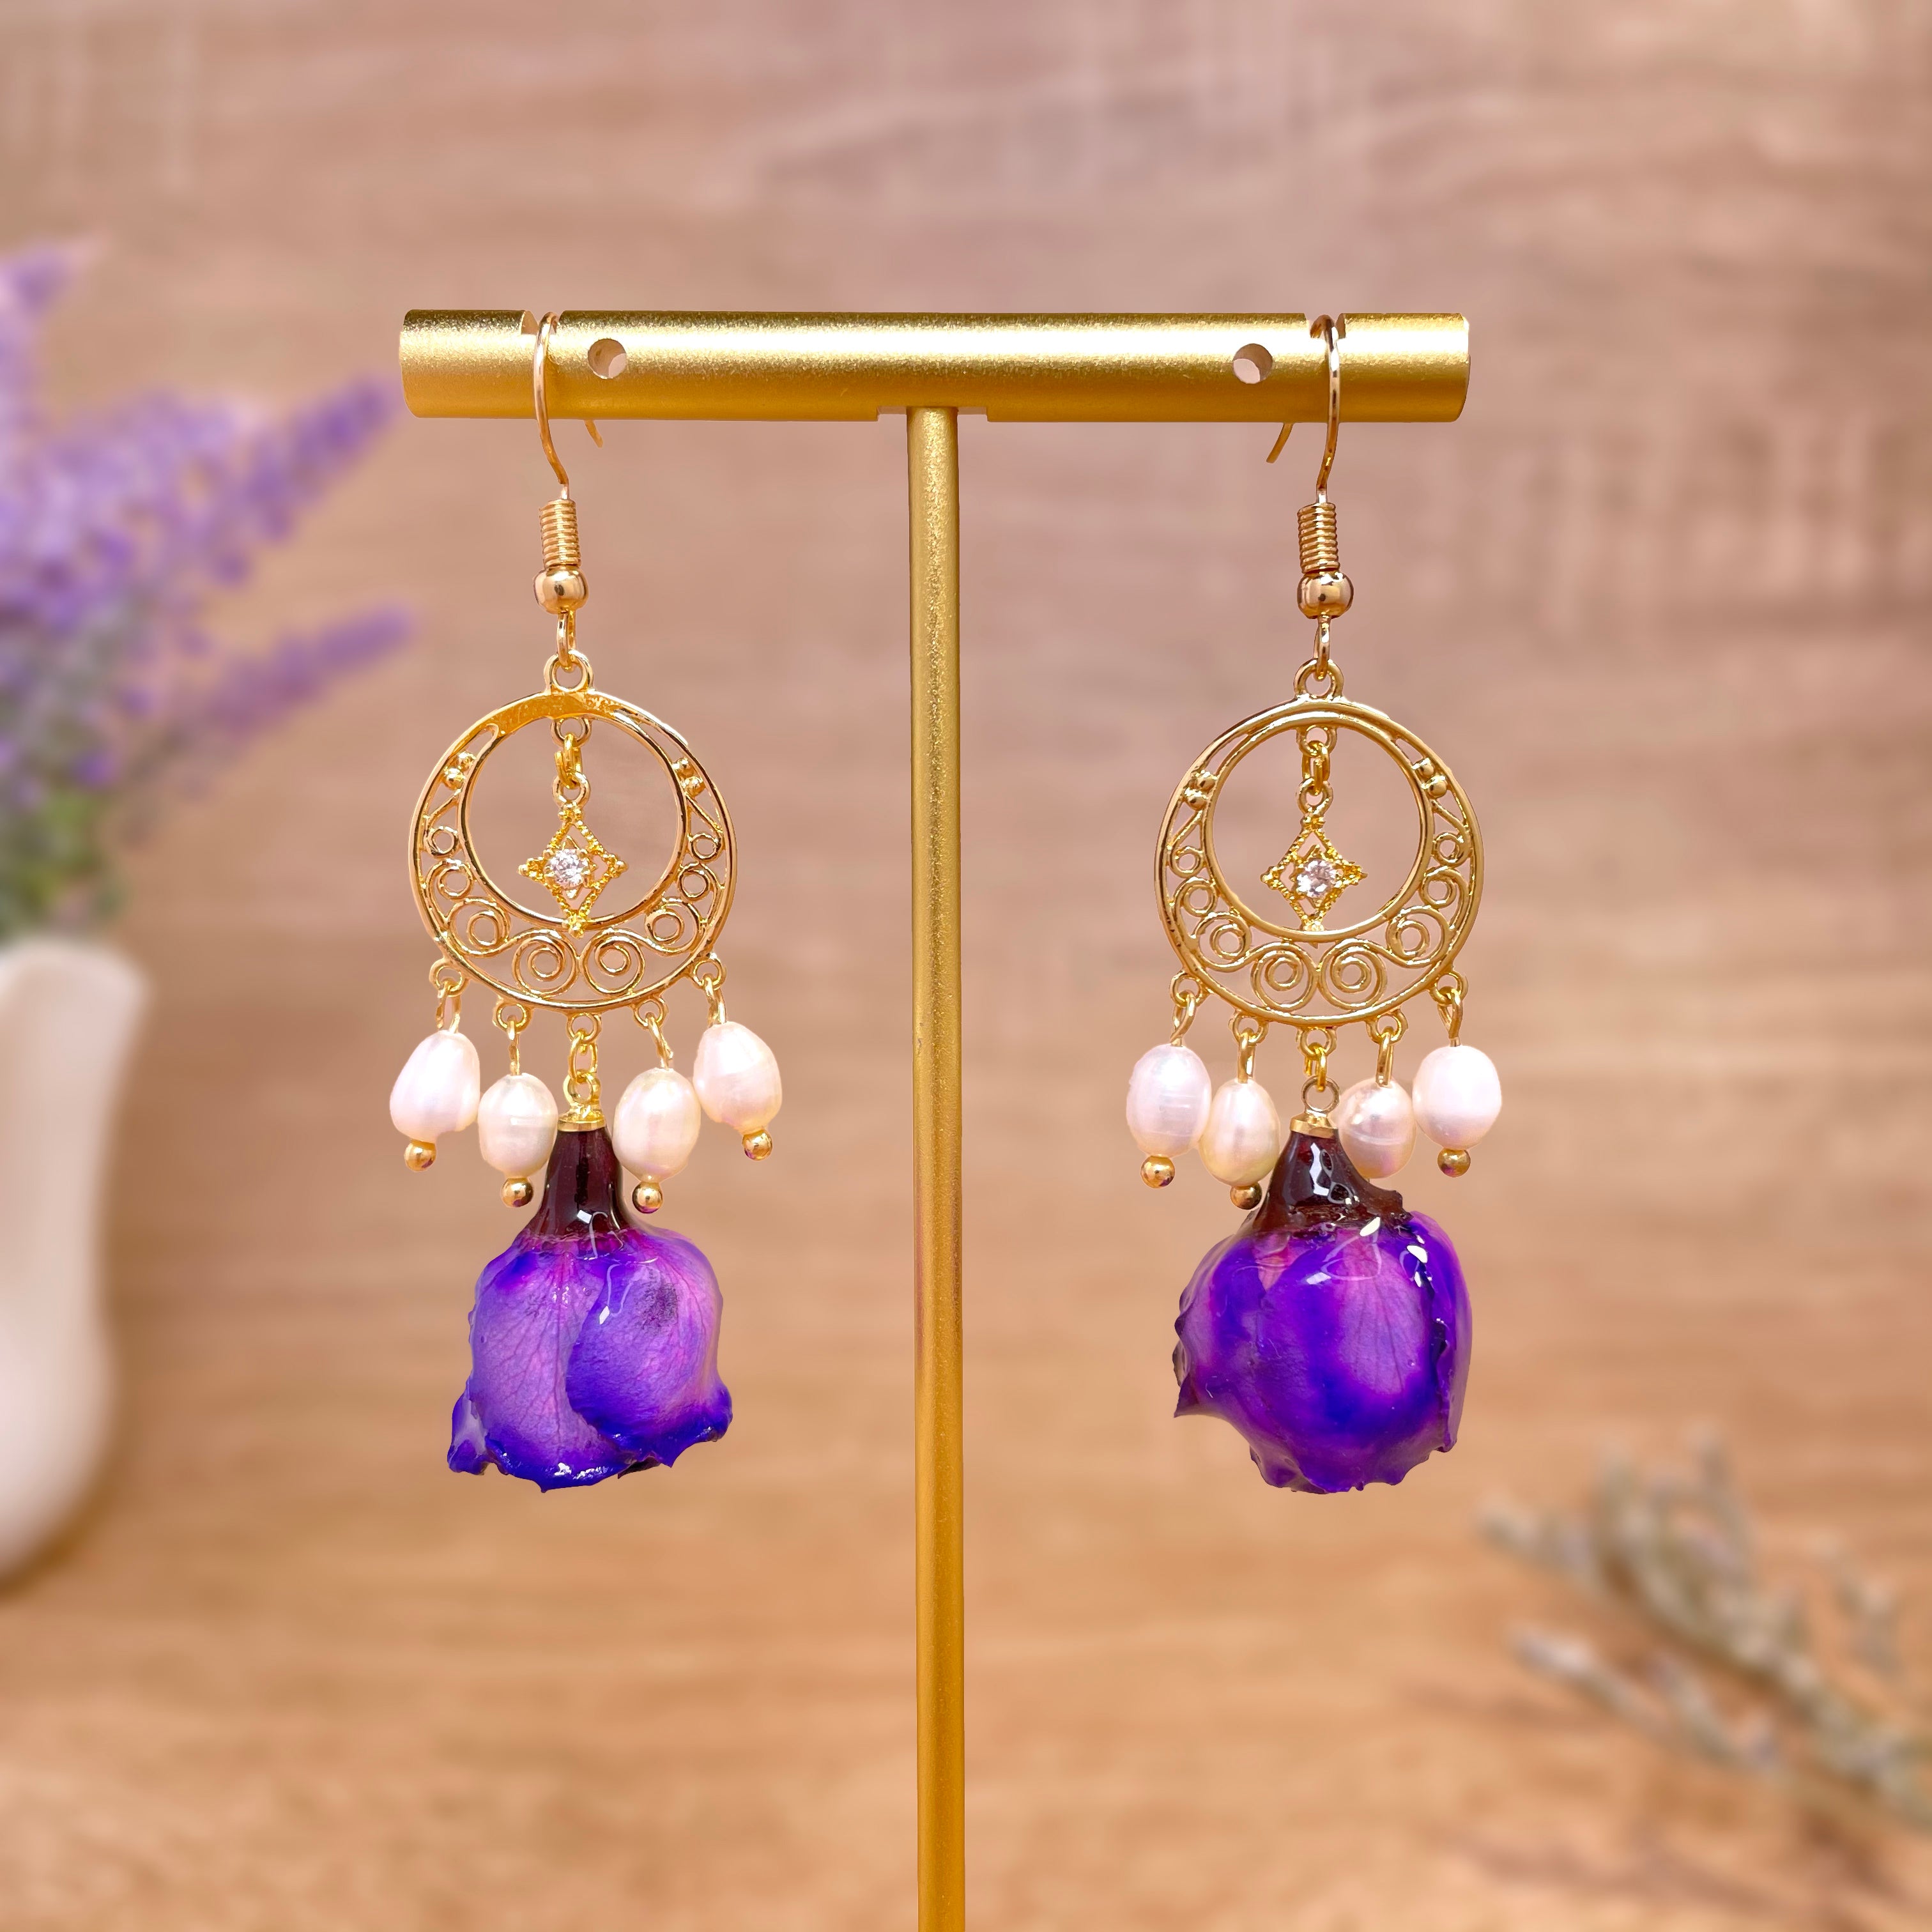 Dangle Earrings with Purple Flower